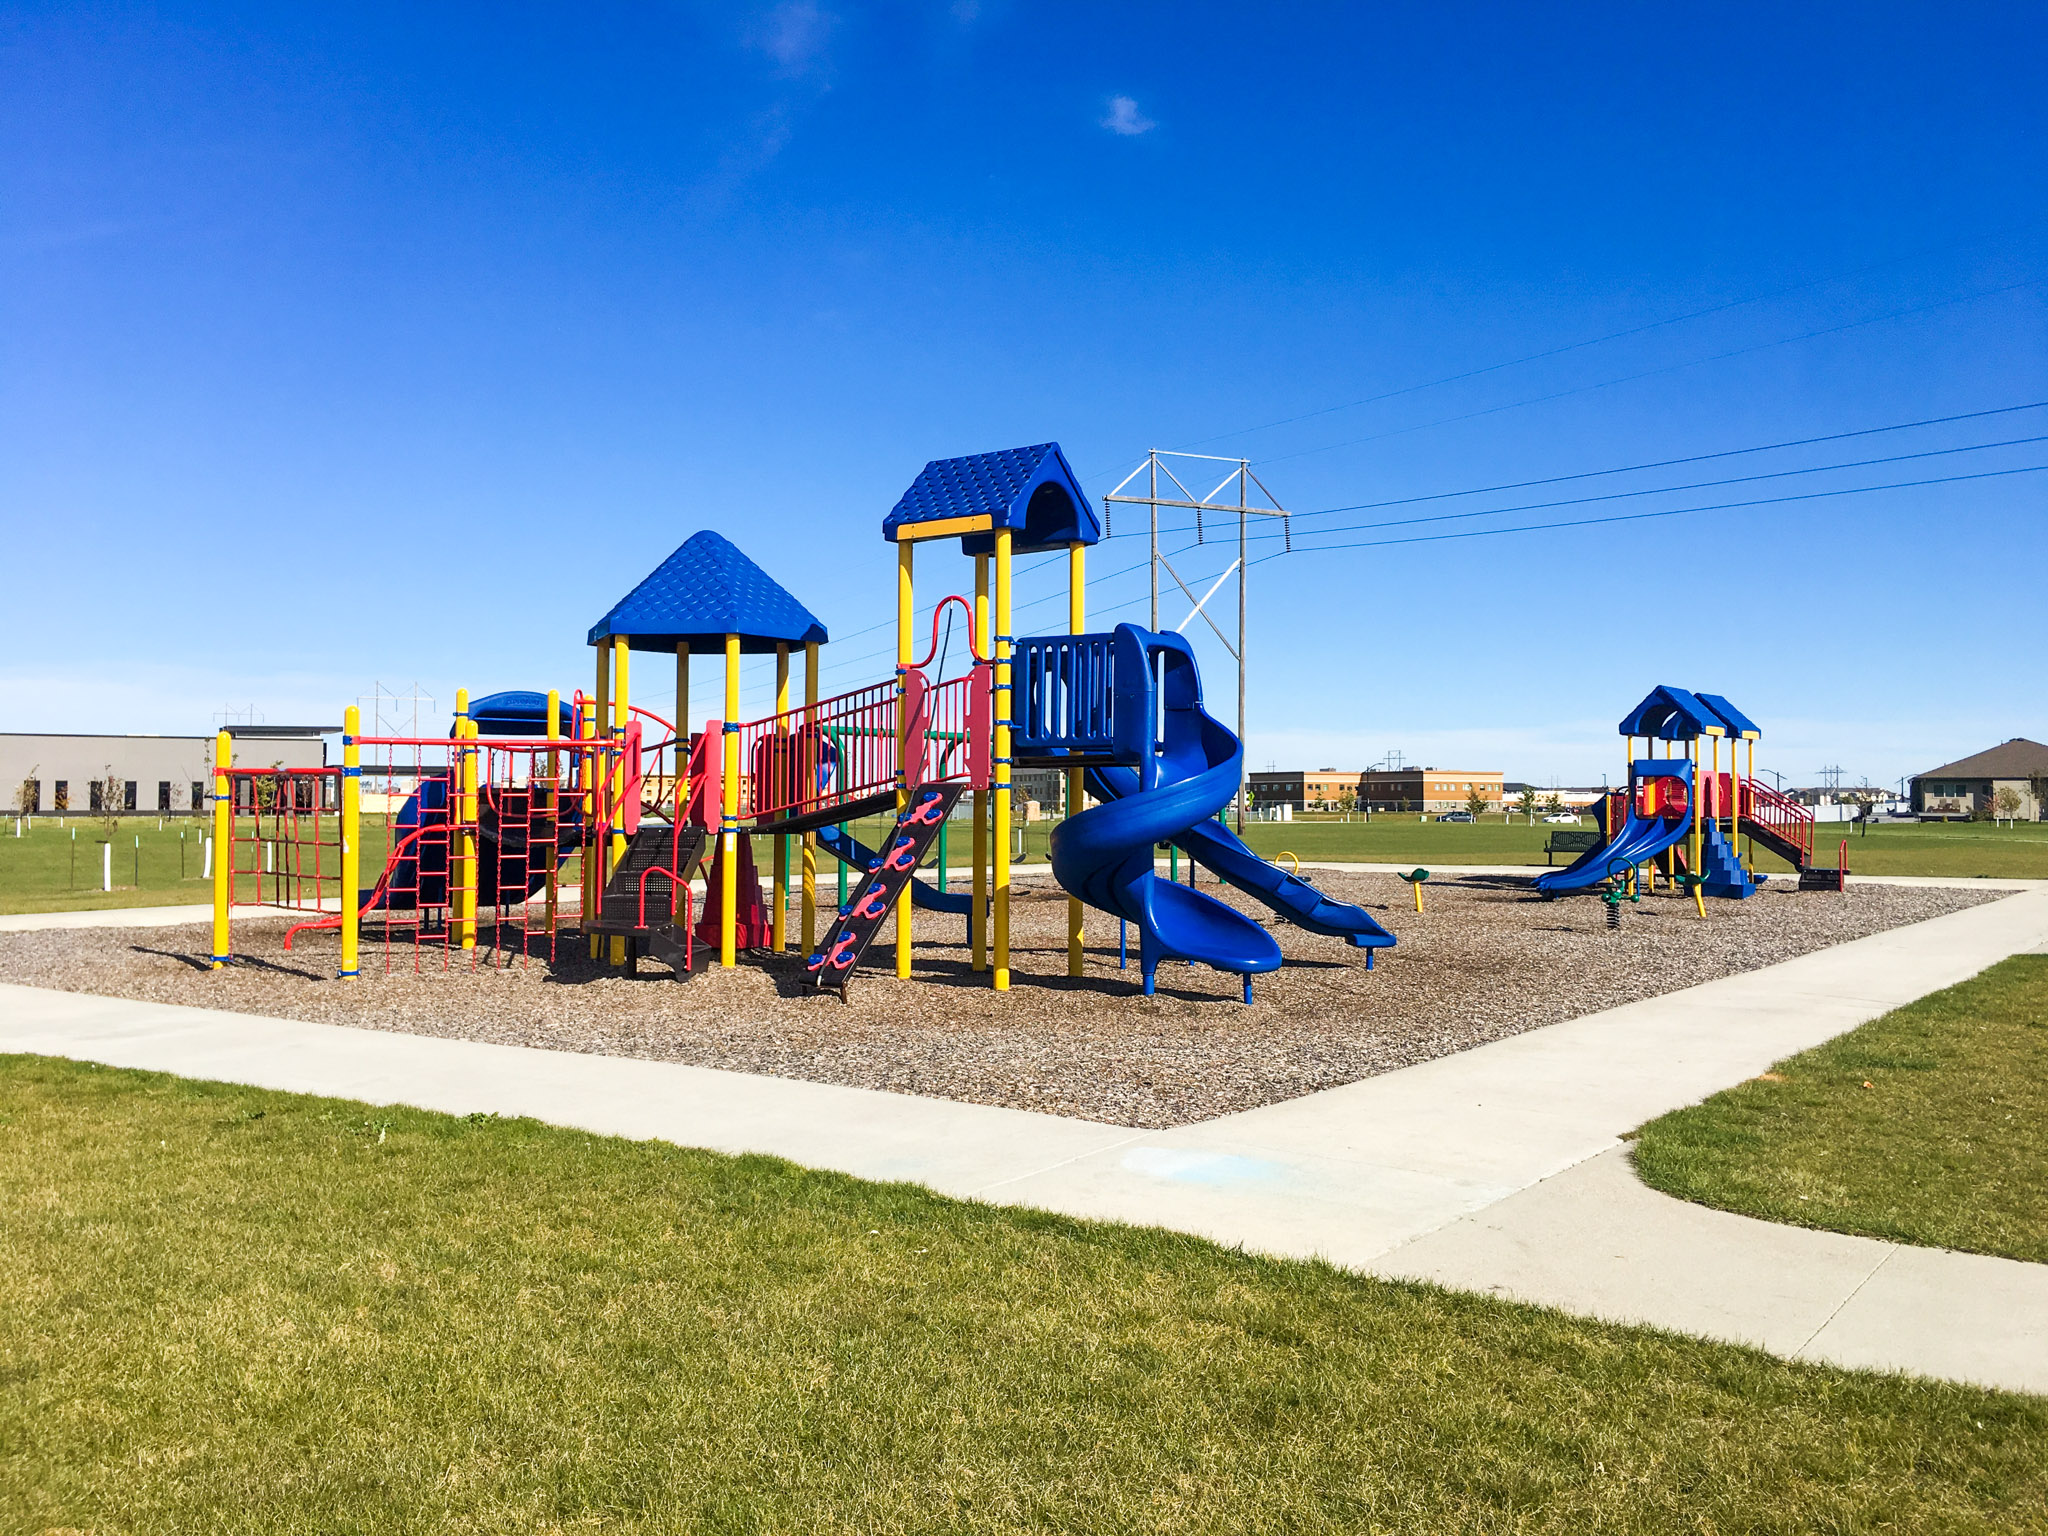 5 public parks near our Fargo & West Fargo communities